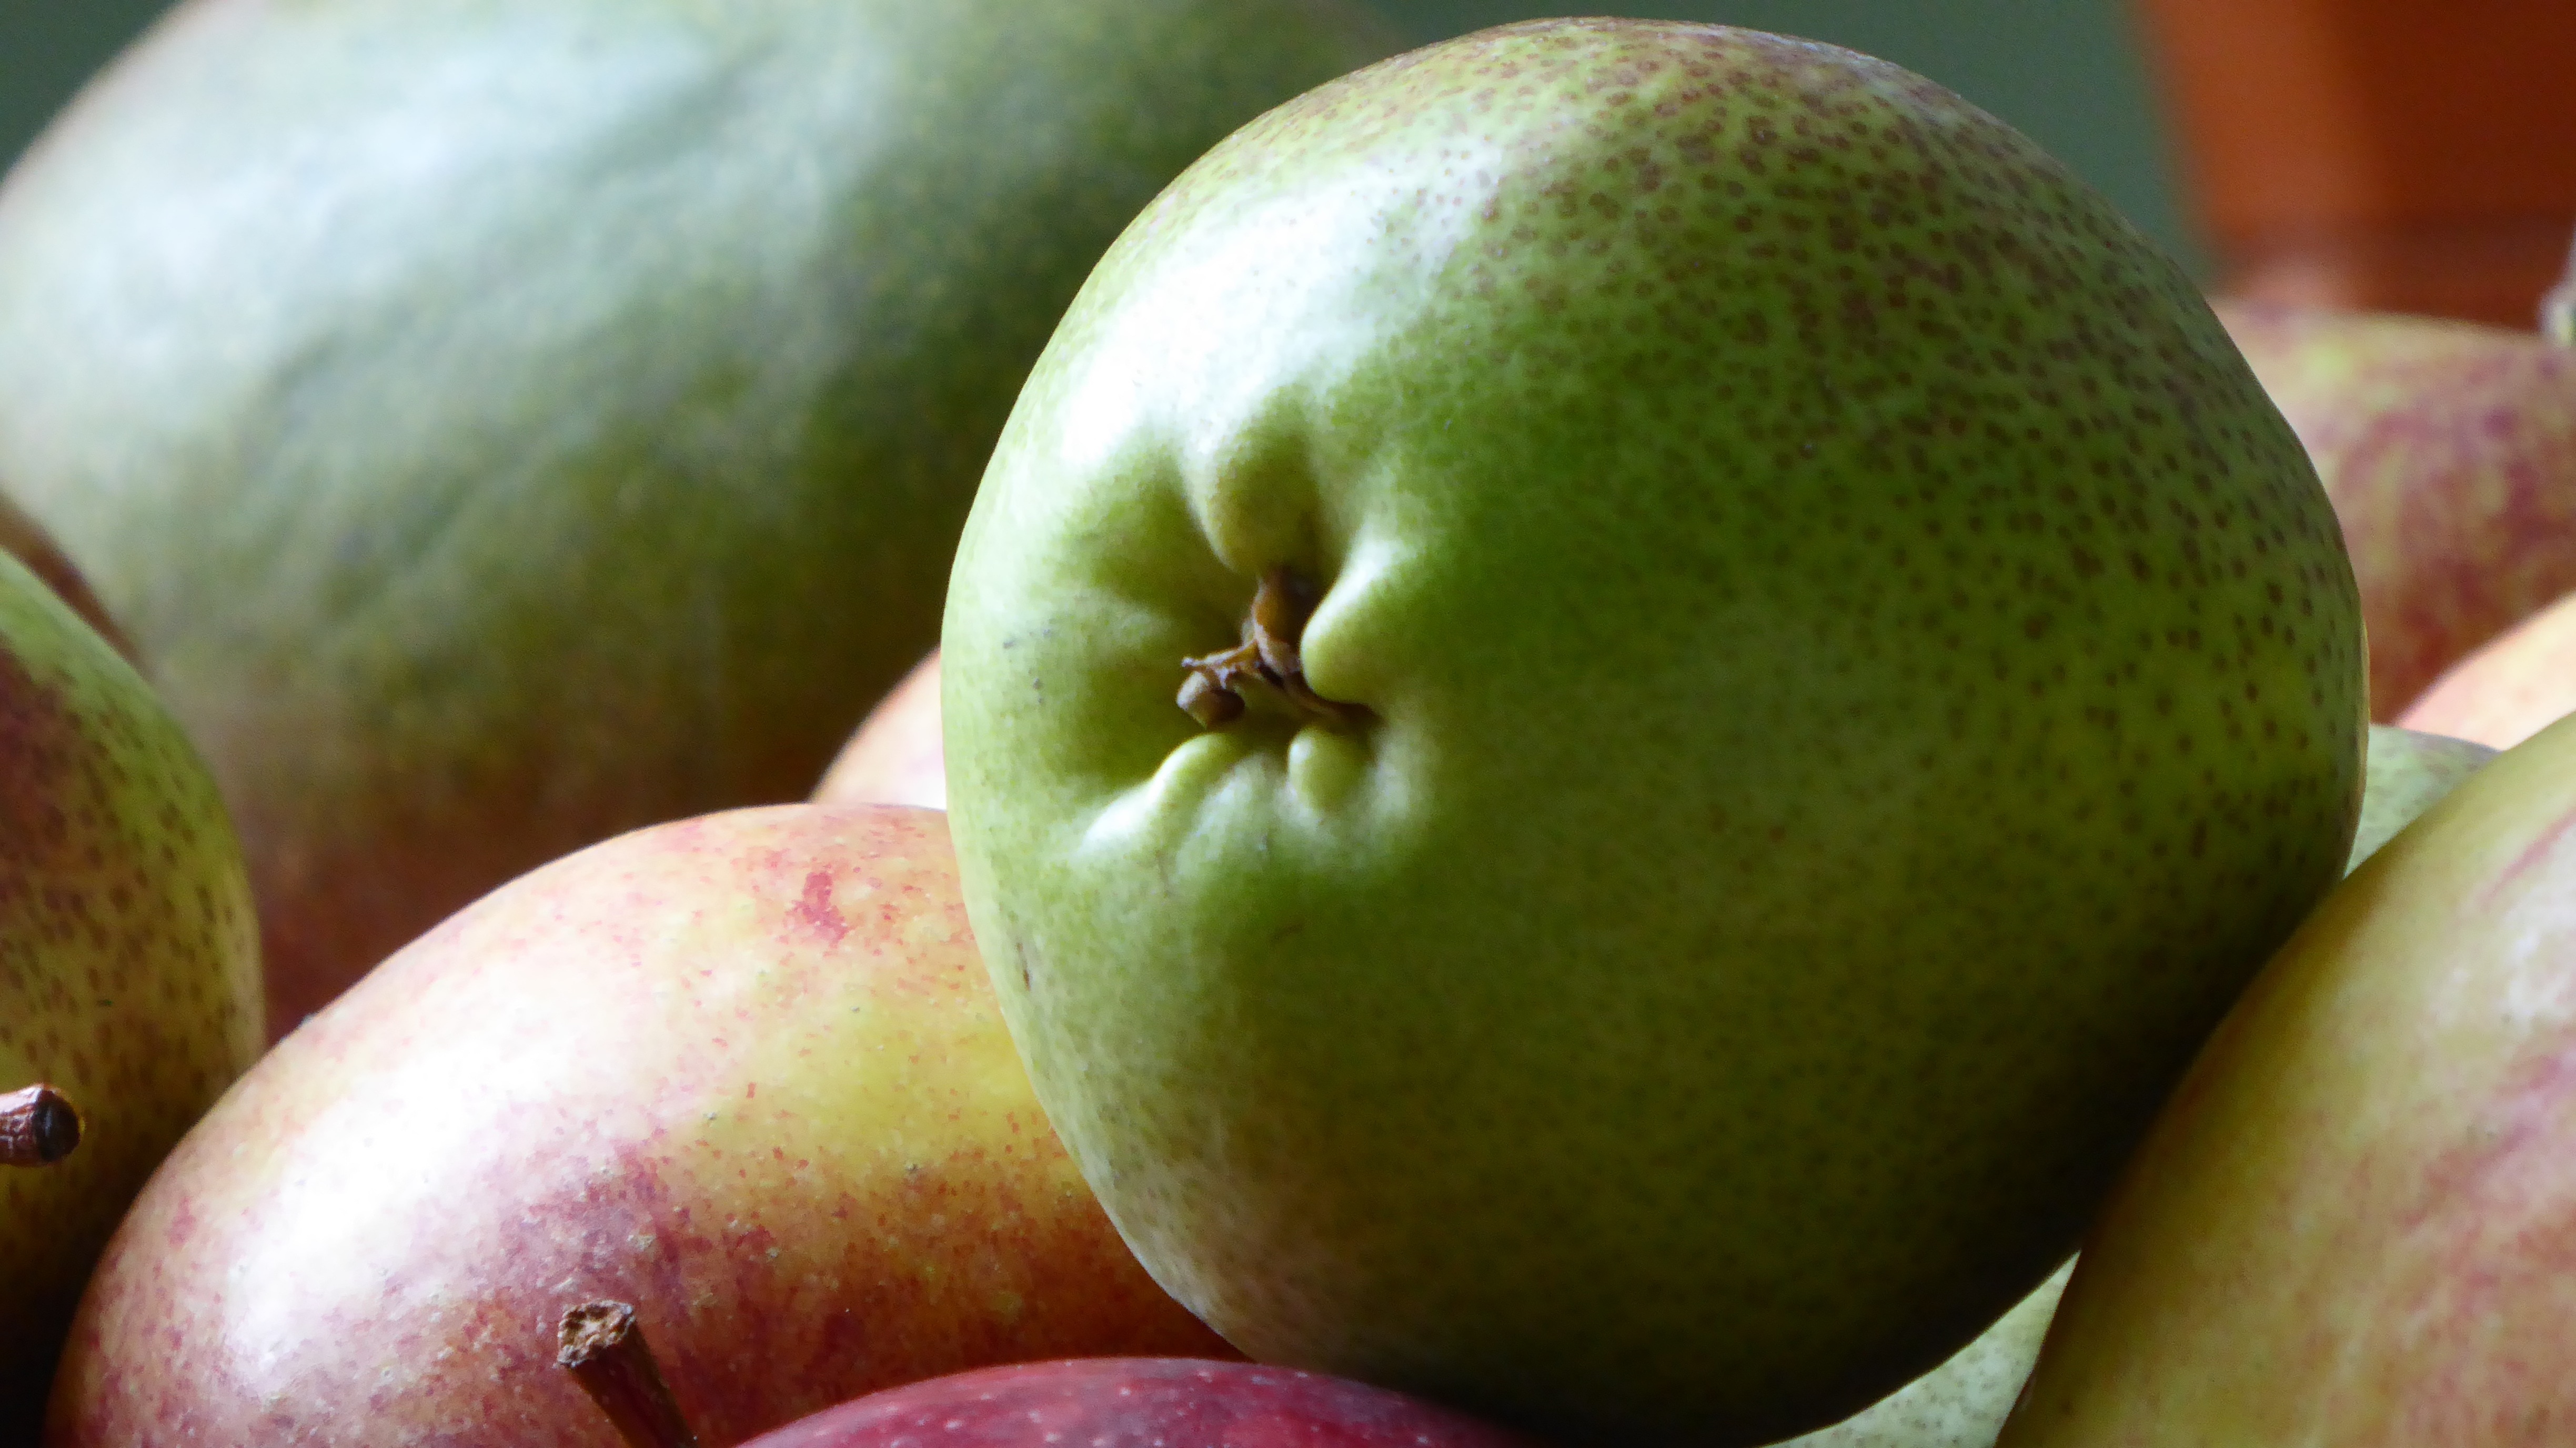 Round fruit. Плод яблоко у груши. Смесь яблока и груши. Смесь яблока и груши фрукт. Плод похожий на яблоко.